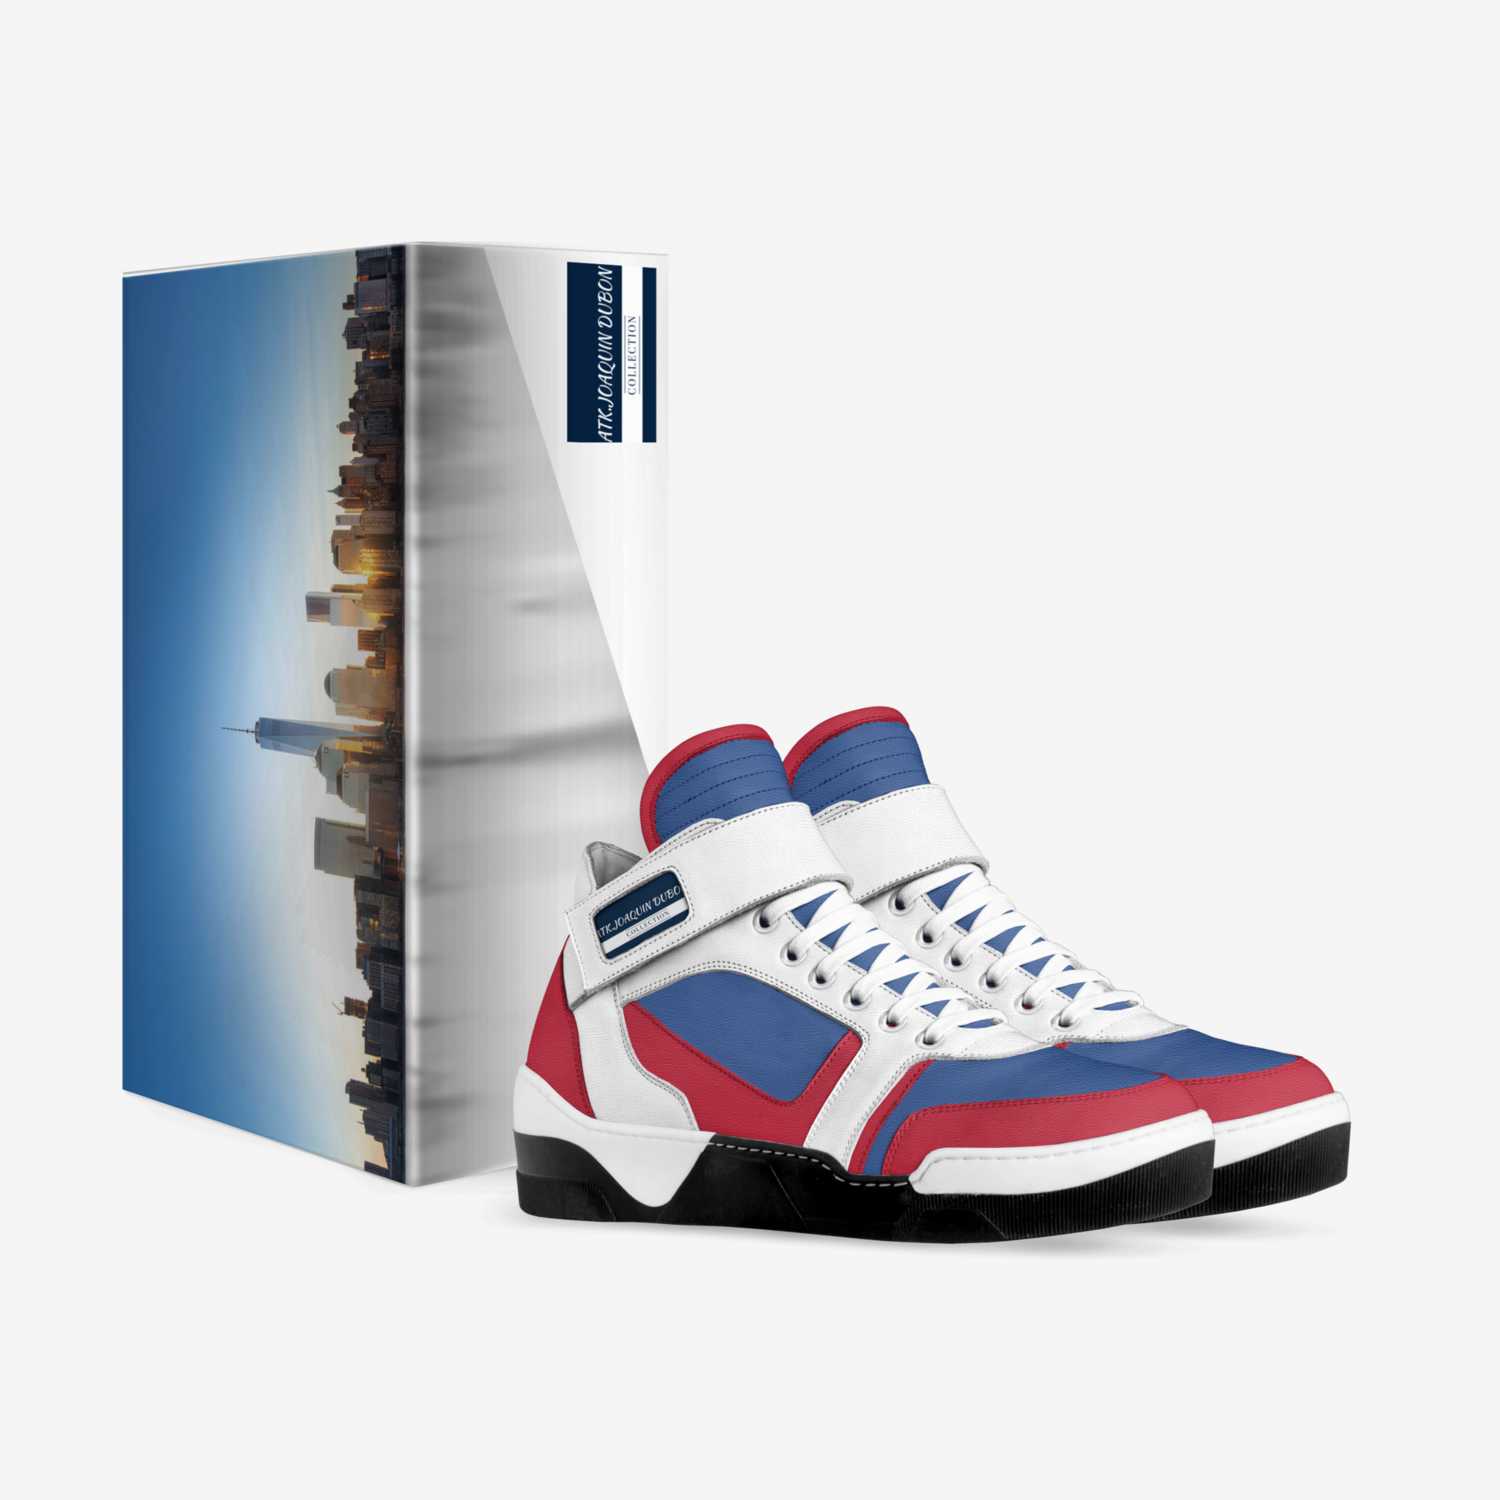 ATK.JOAQUIN DUBON  custom made in Italy shoes by Joaquin Dubon | Box view